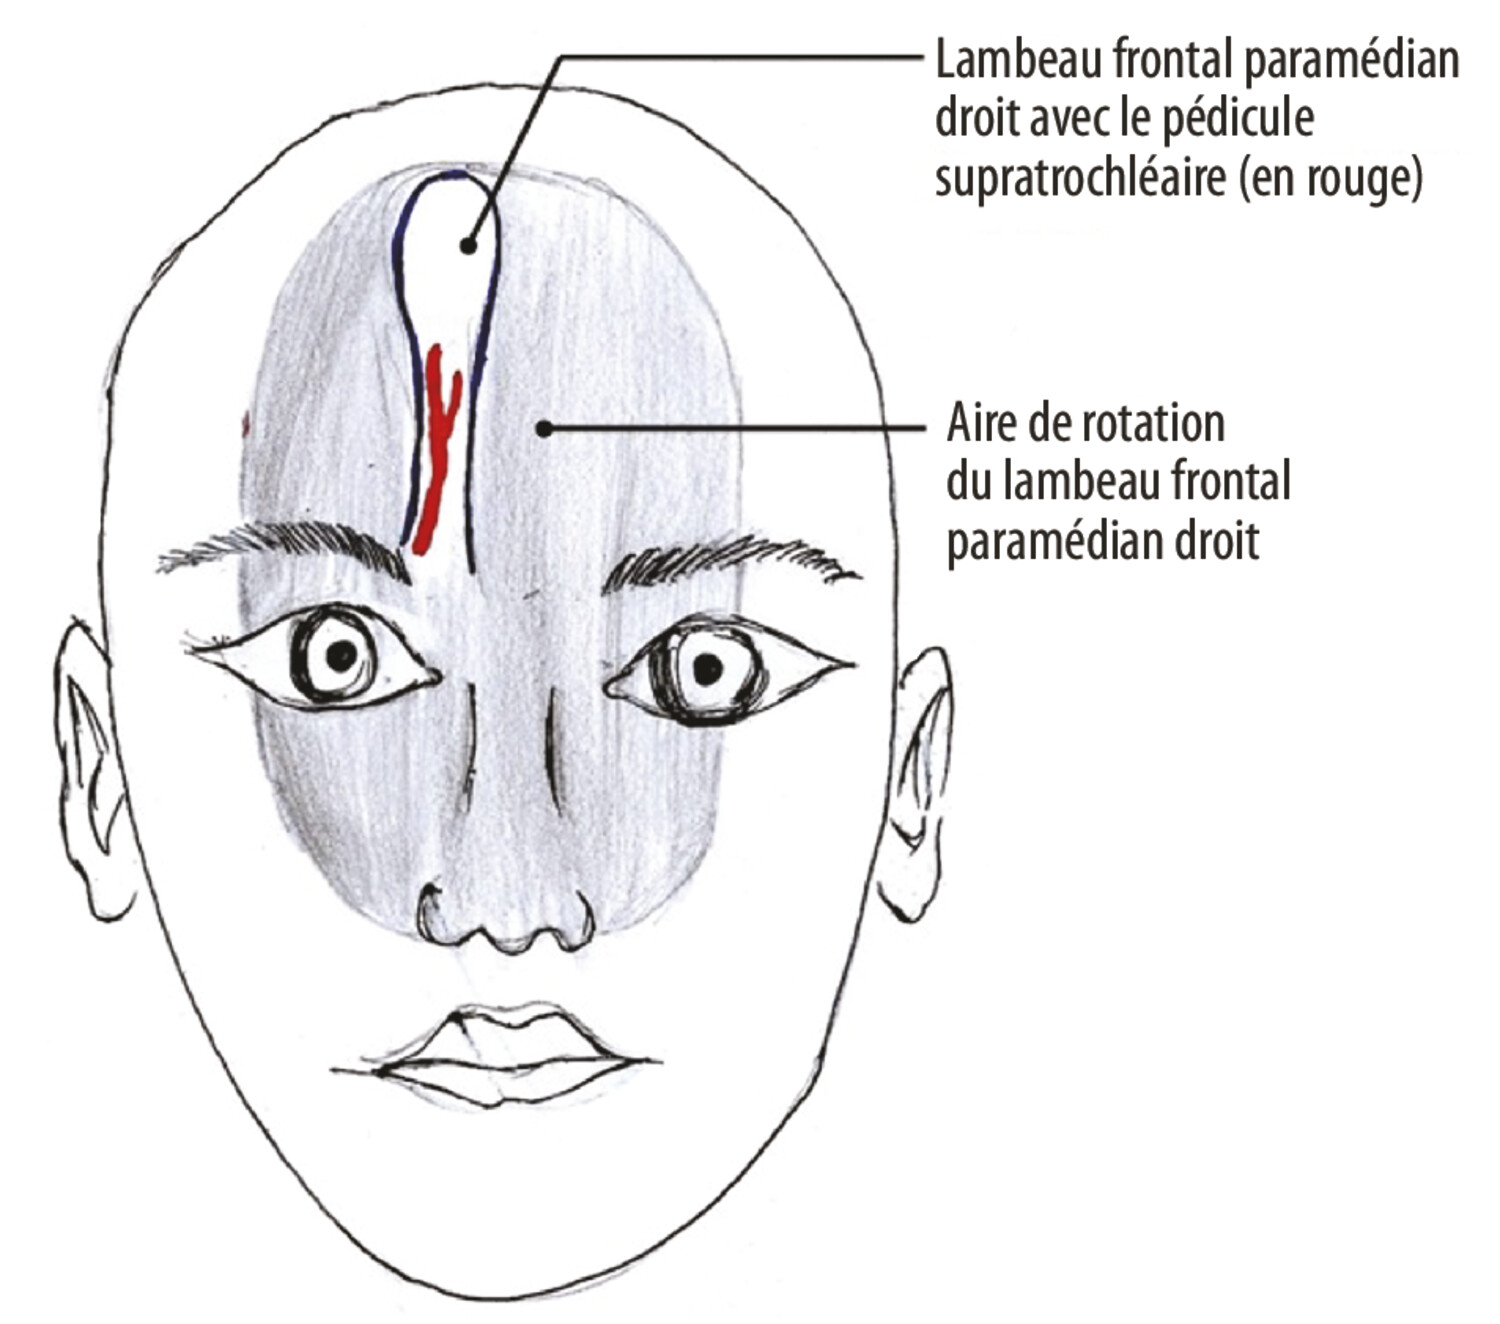 Reconstruction d’une perte de substance paracanthale interne par lambeau frontal paramédian myocutané - Figure 5